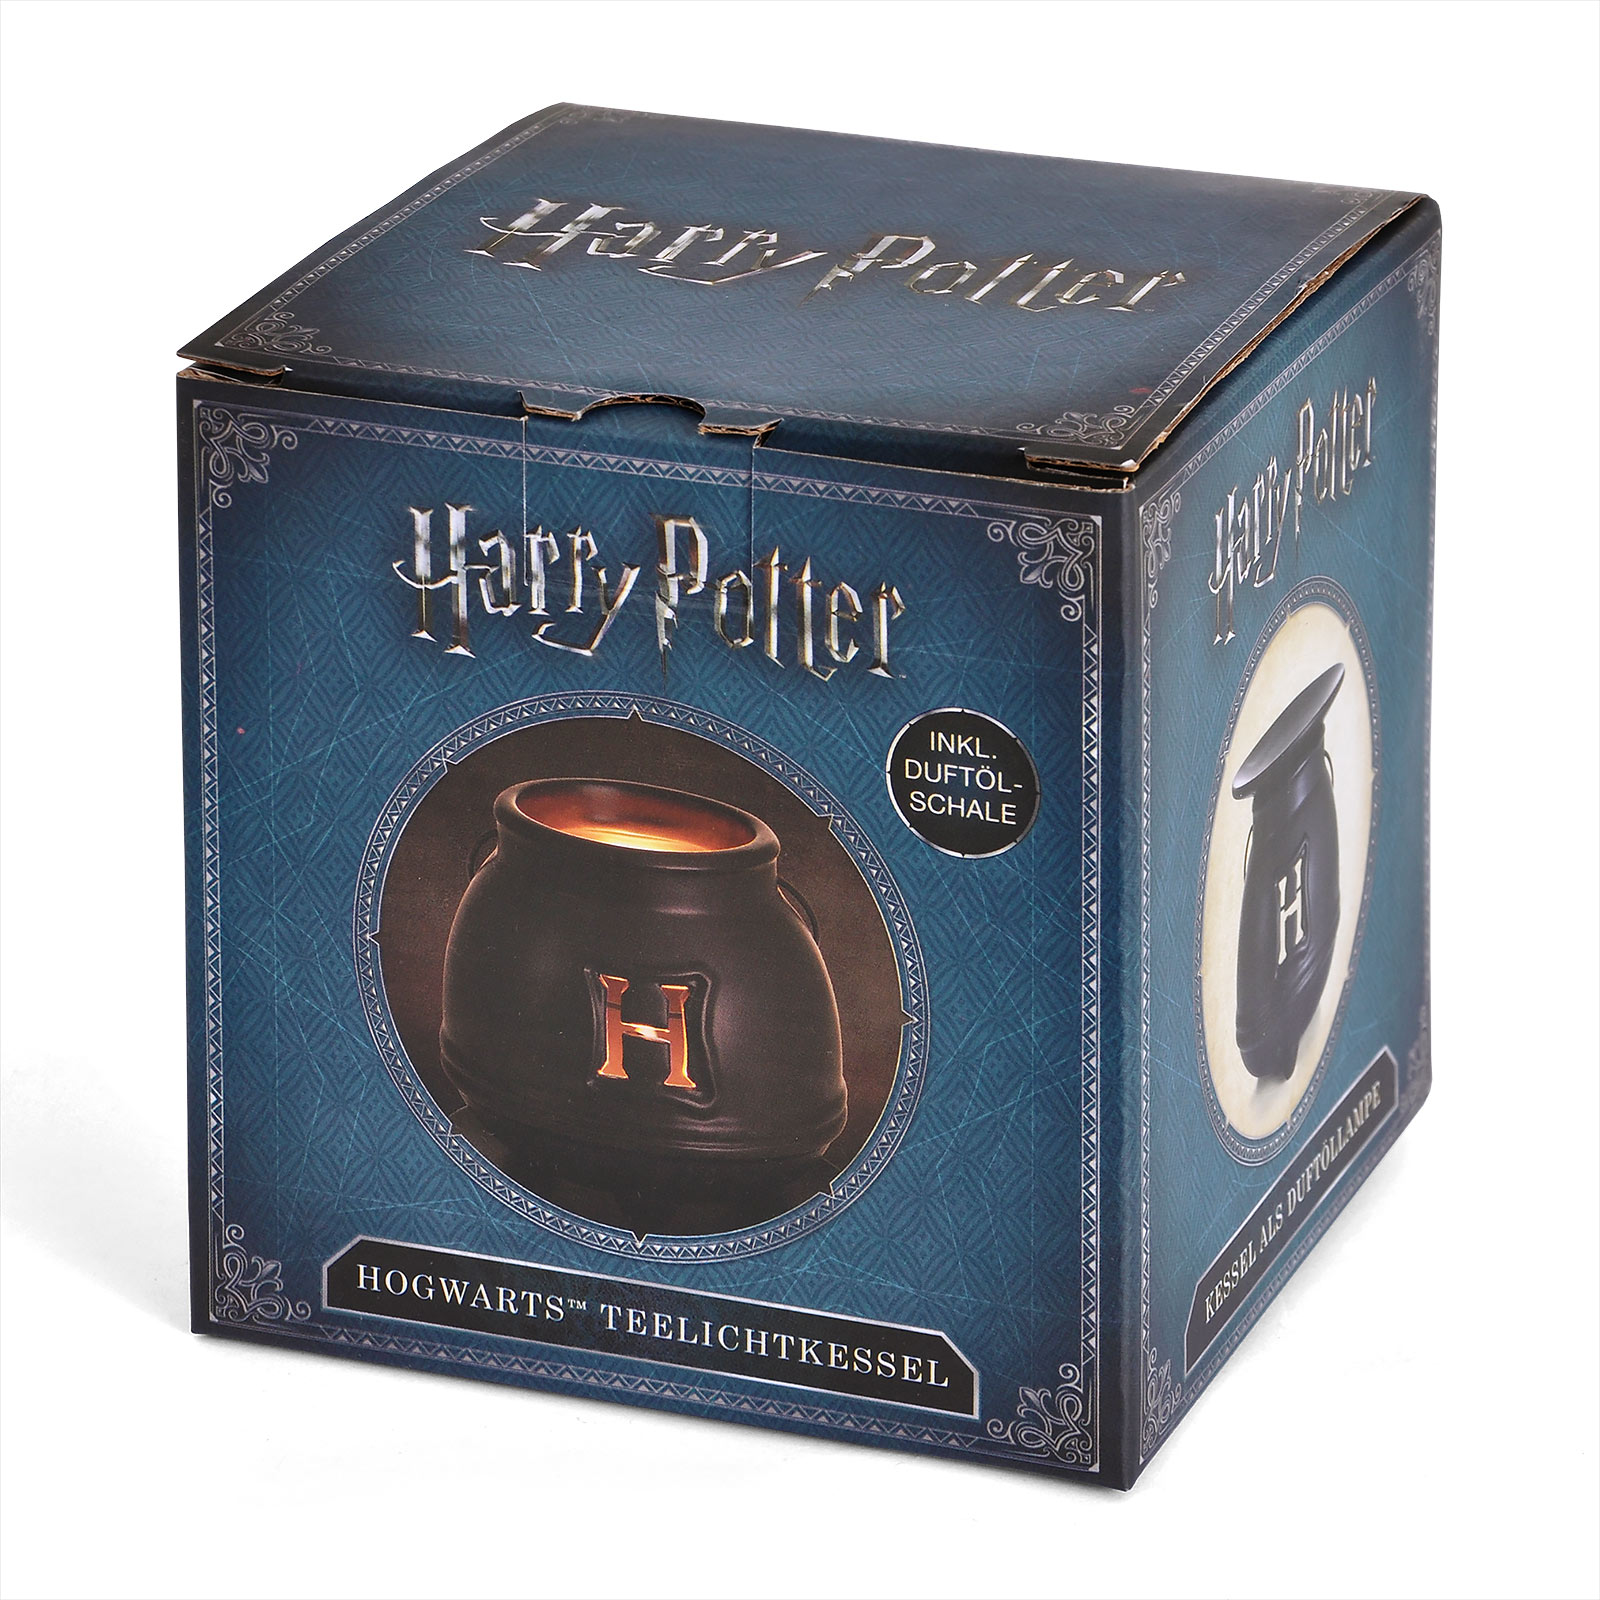 Hogwarts Theelichtpot voor Harry Potter Fans